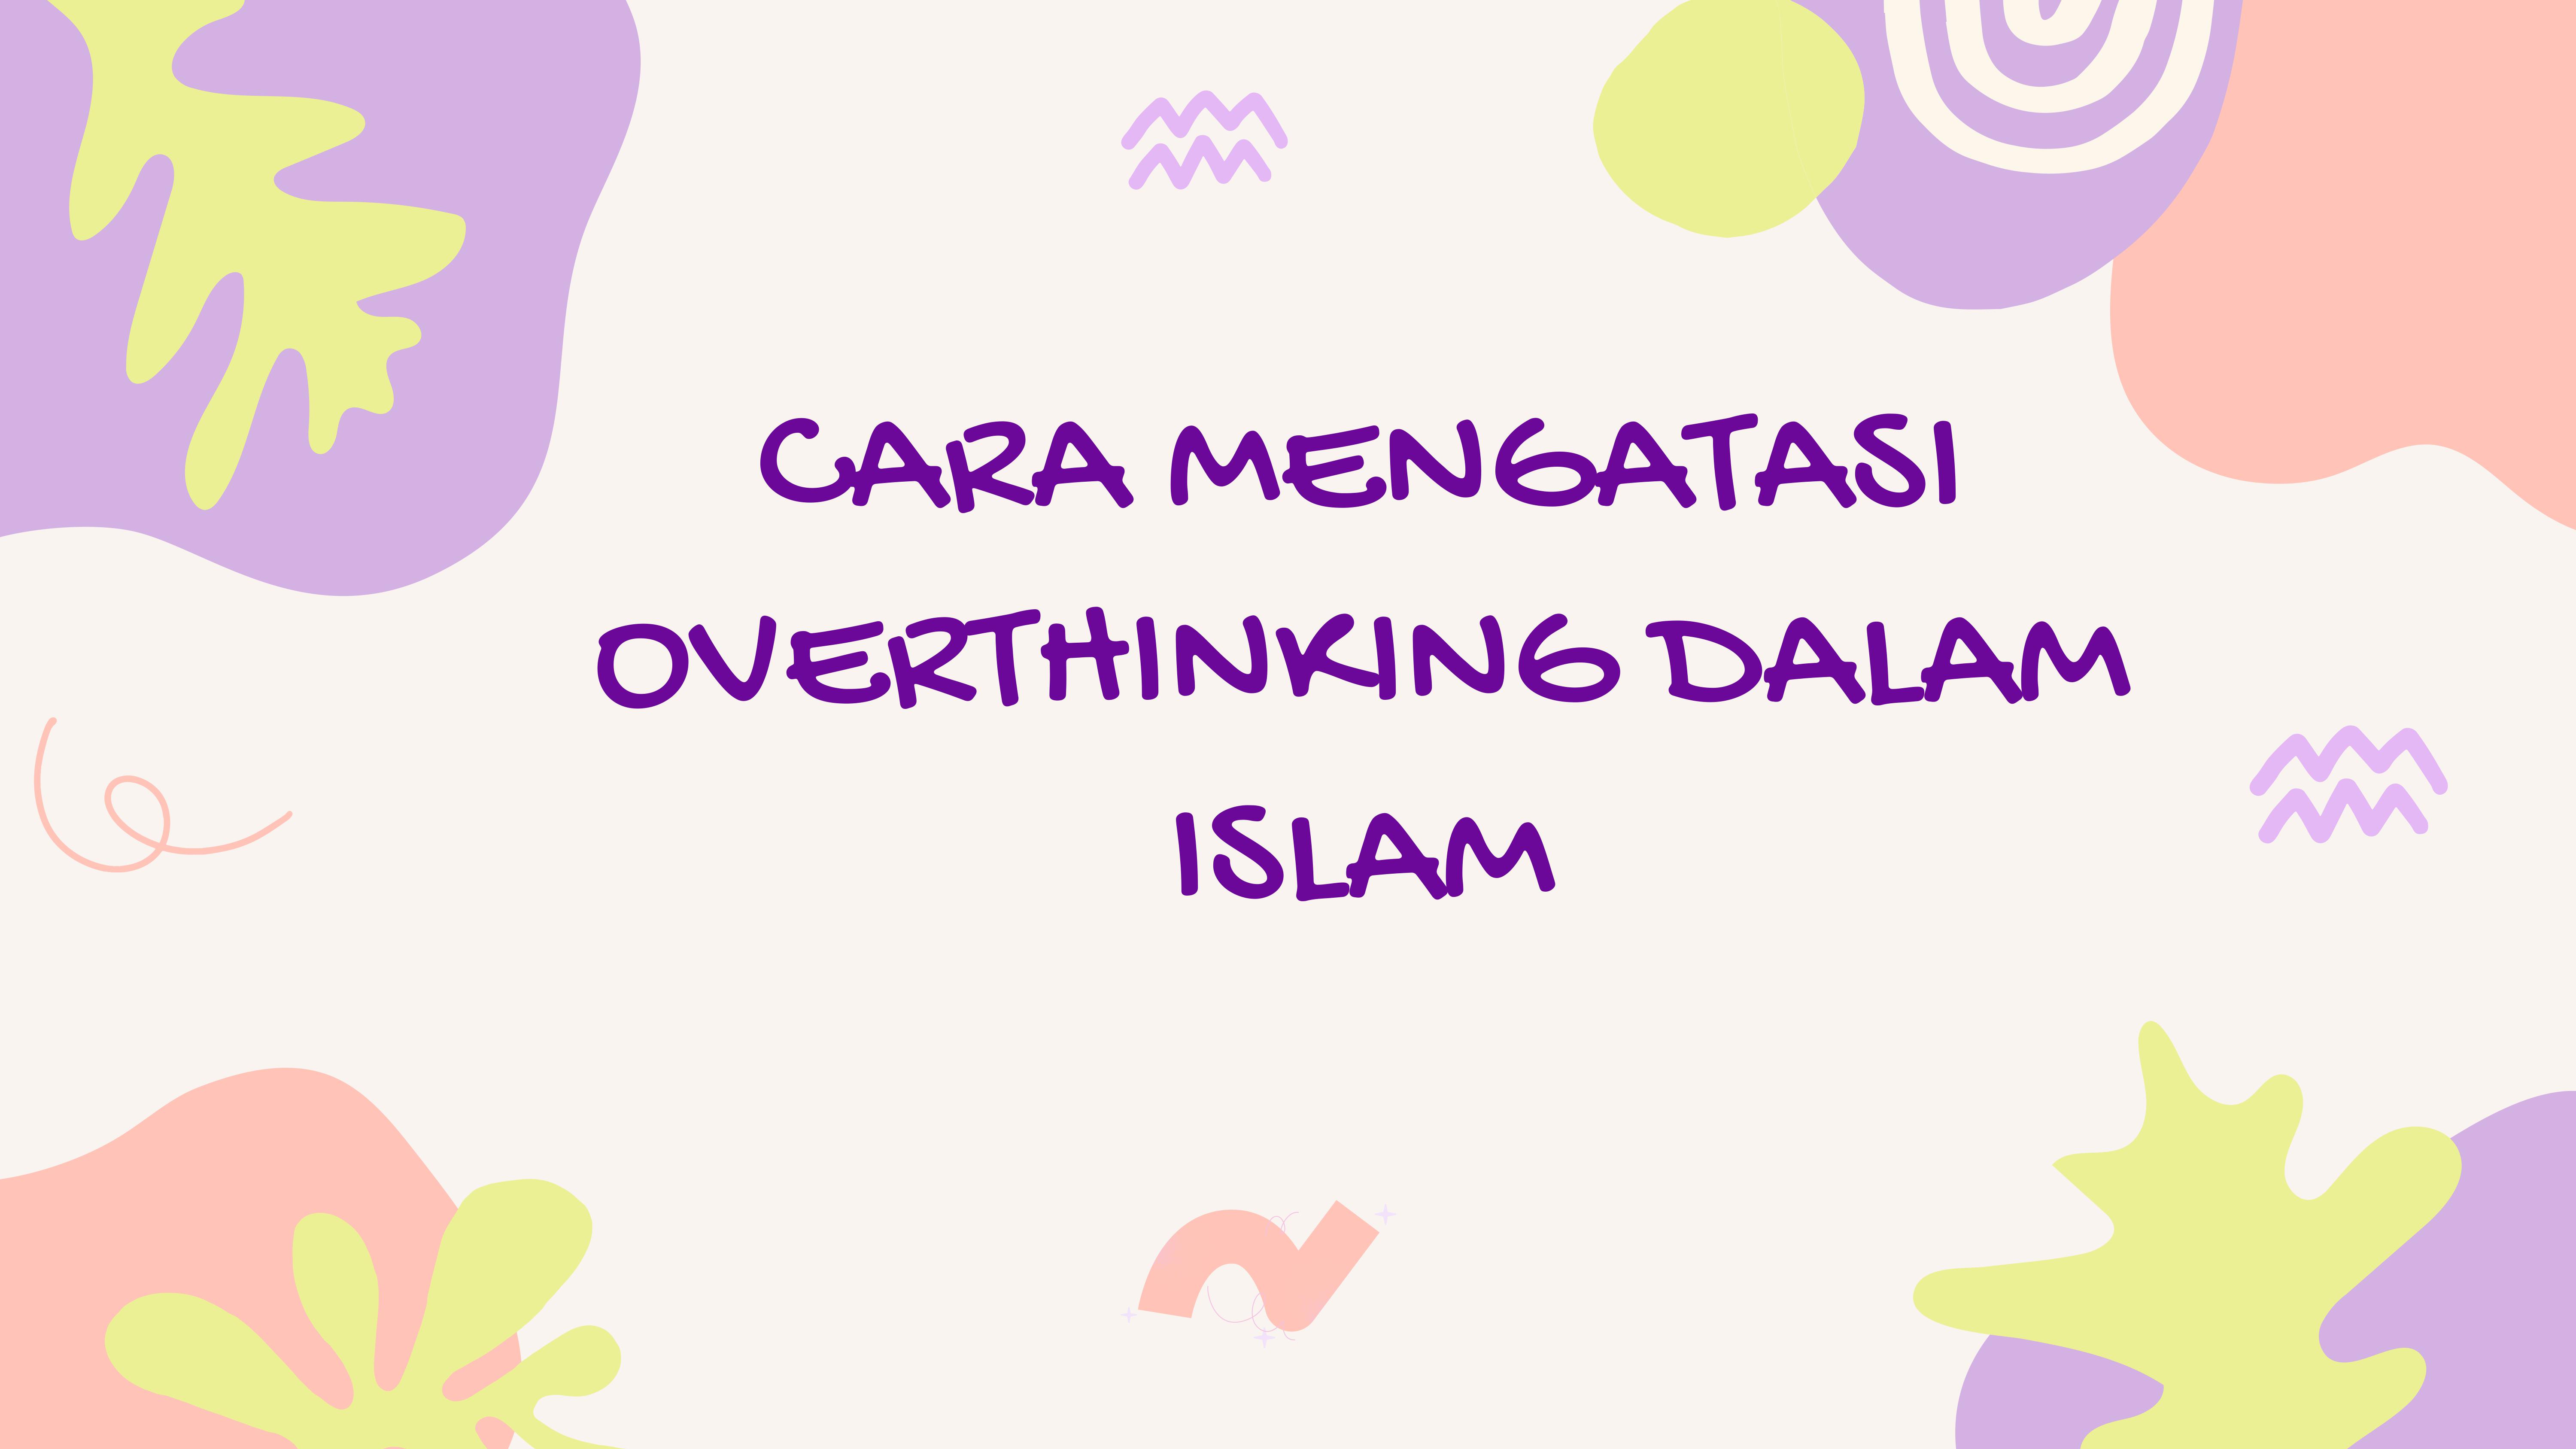 CARA MENGATASI OVERTHINKING DALAM ISLAM 1